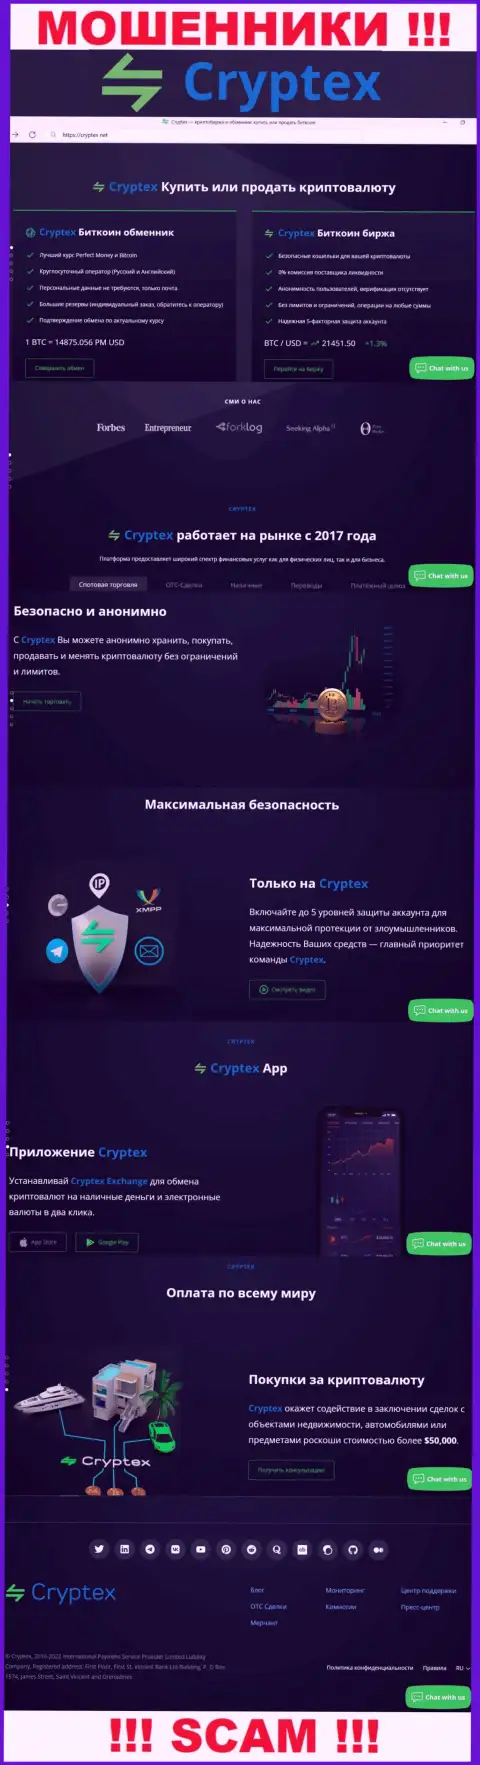 Скрин официального веб-сайта жульнической компании CryptexNet